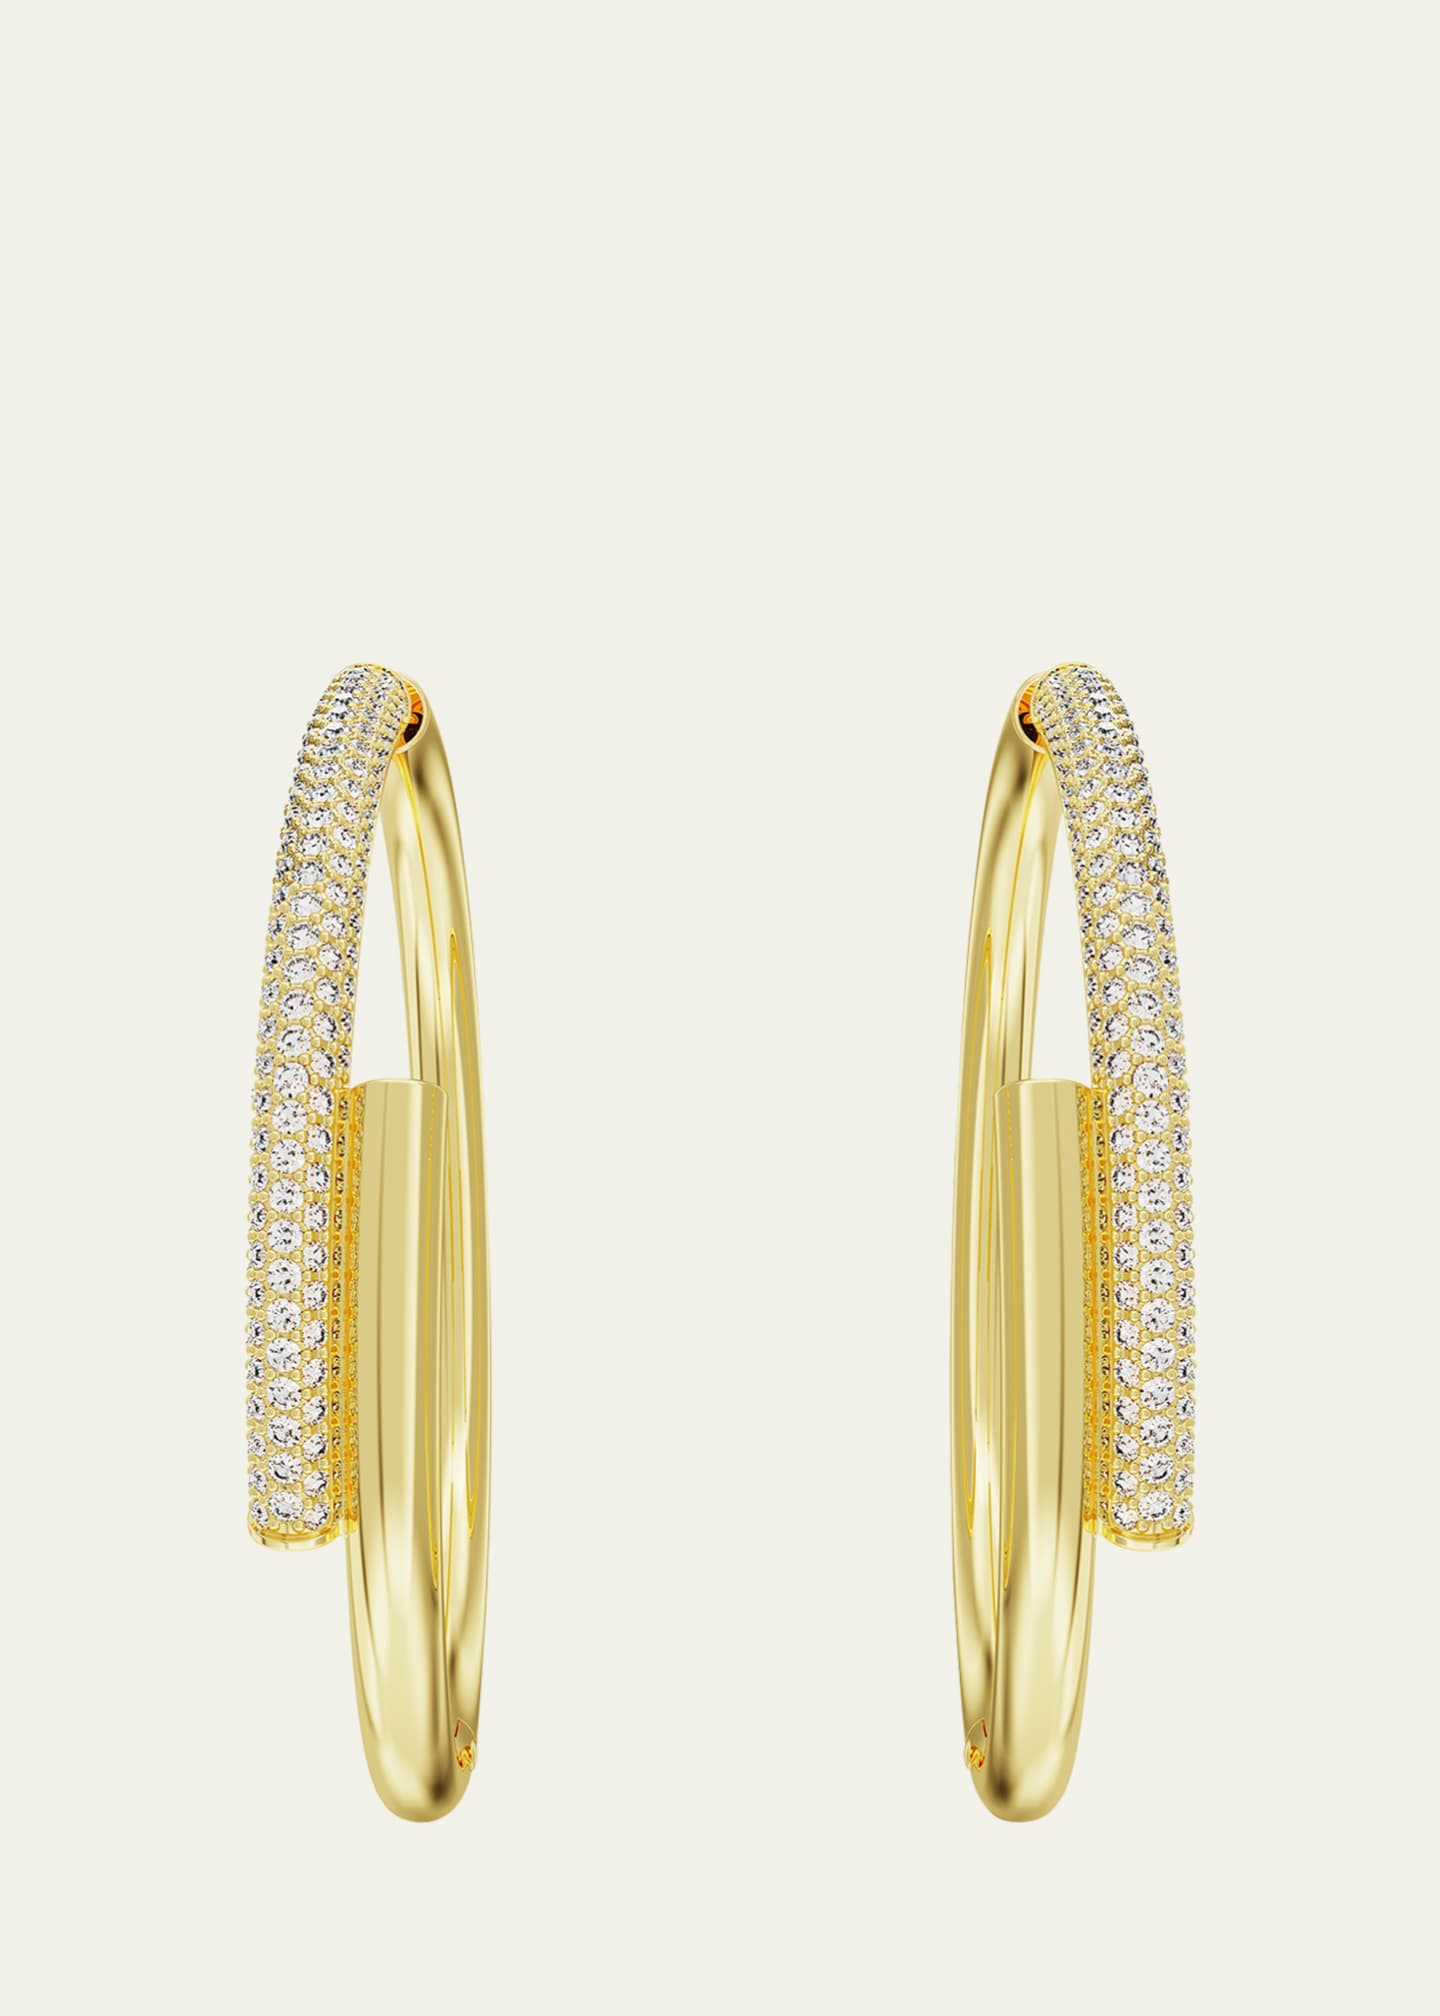 SWAROVSKI Dextera Crystal Pave Crossover Hoop Earrings Image 3 of 5